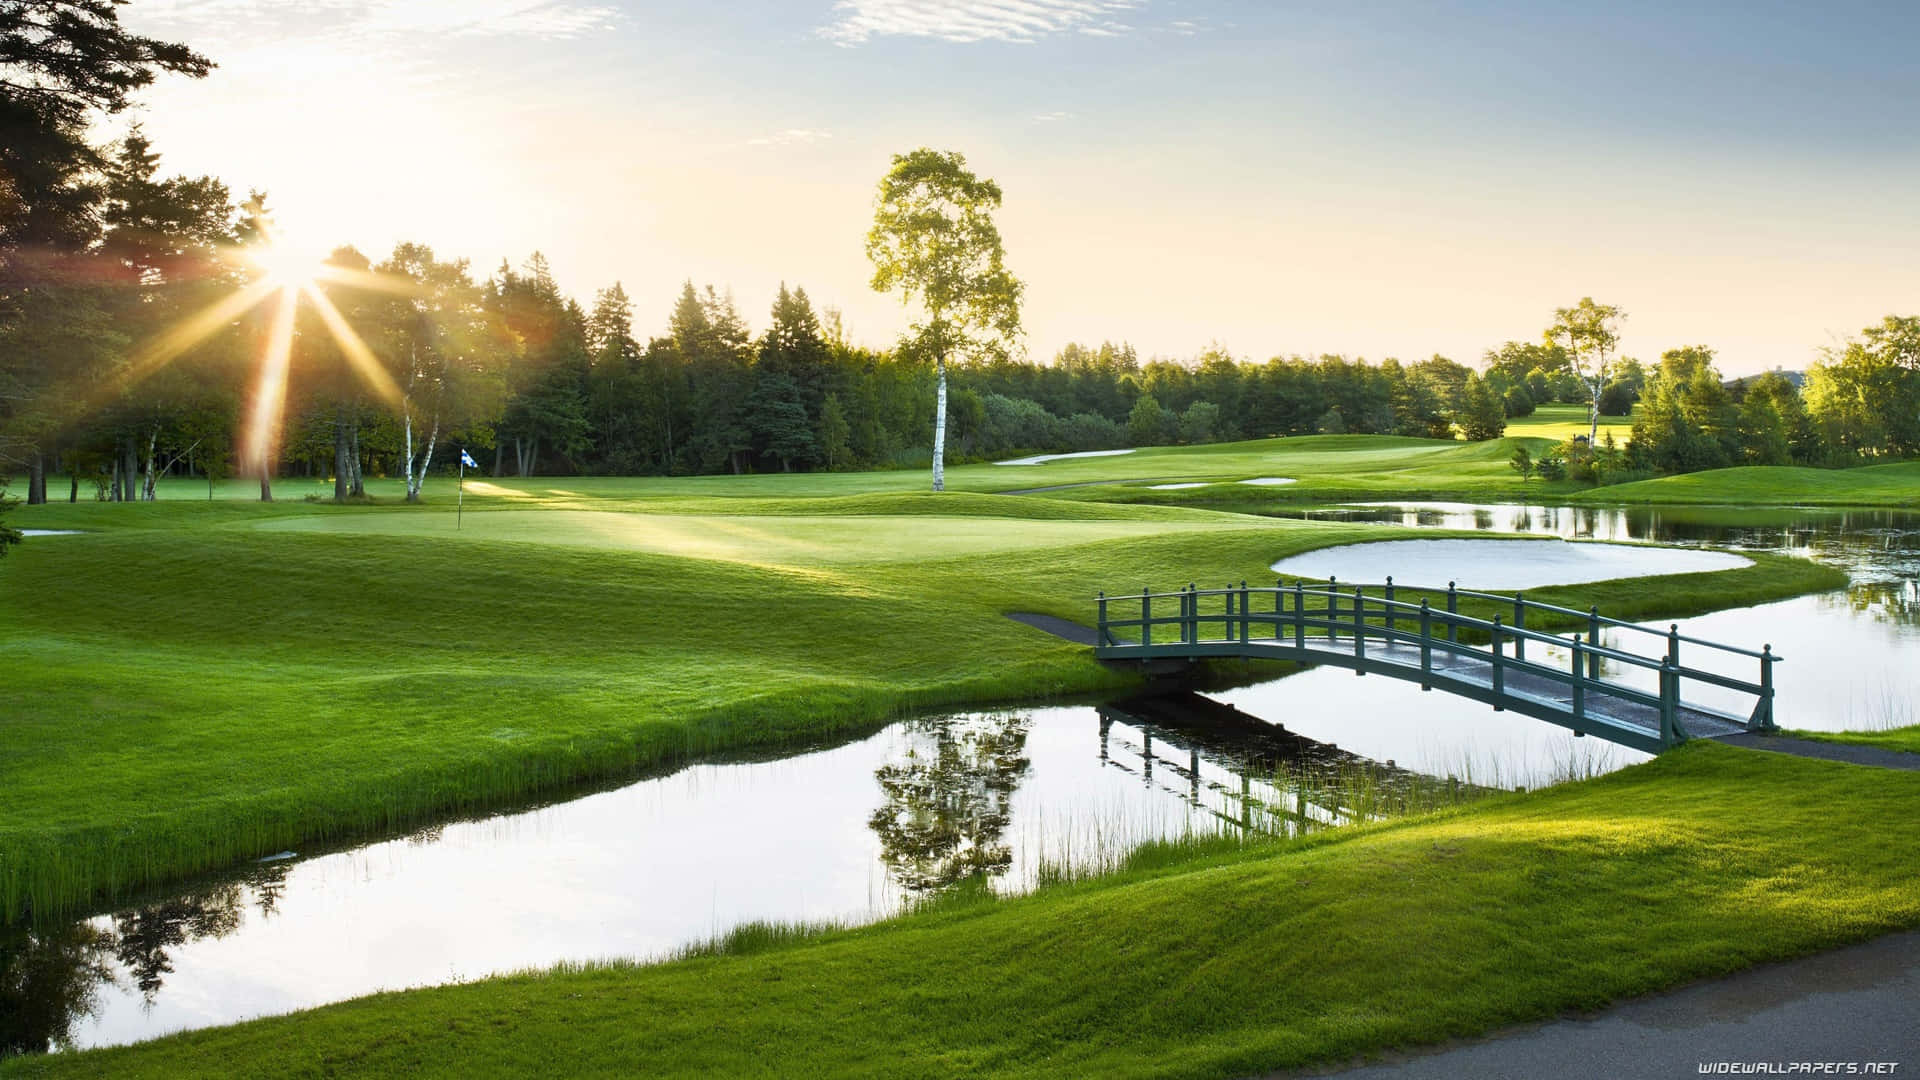 Unseratemberaubender Hd-golfplatz Ist Perfekt Für Spieler Jeden Levels.